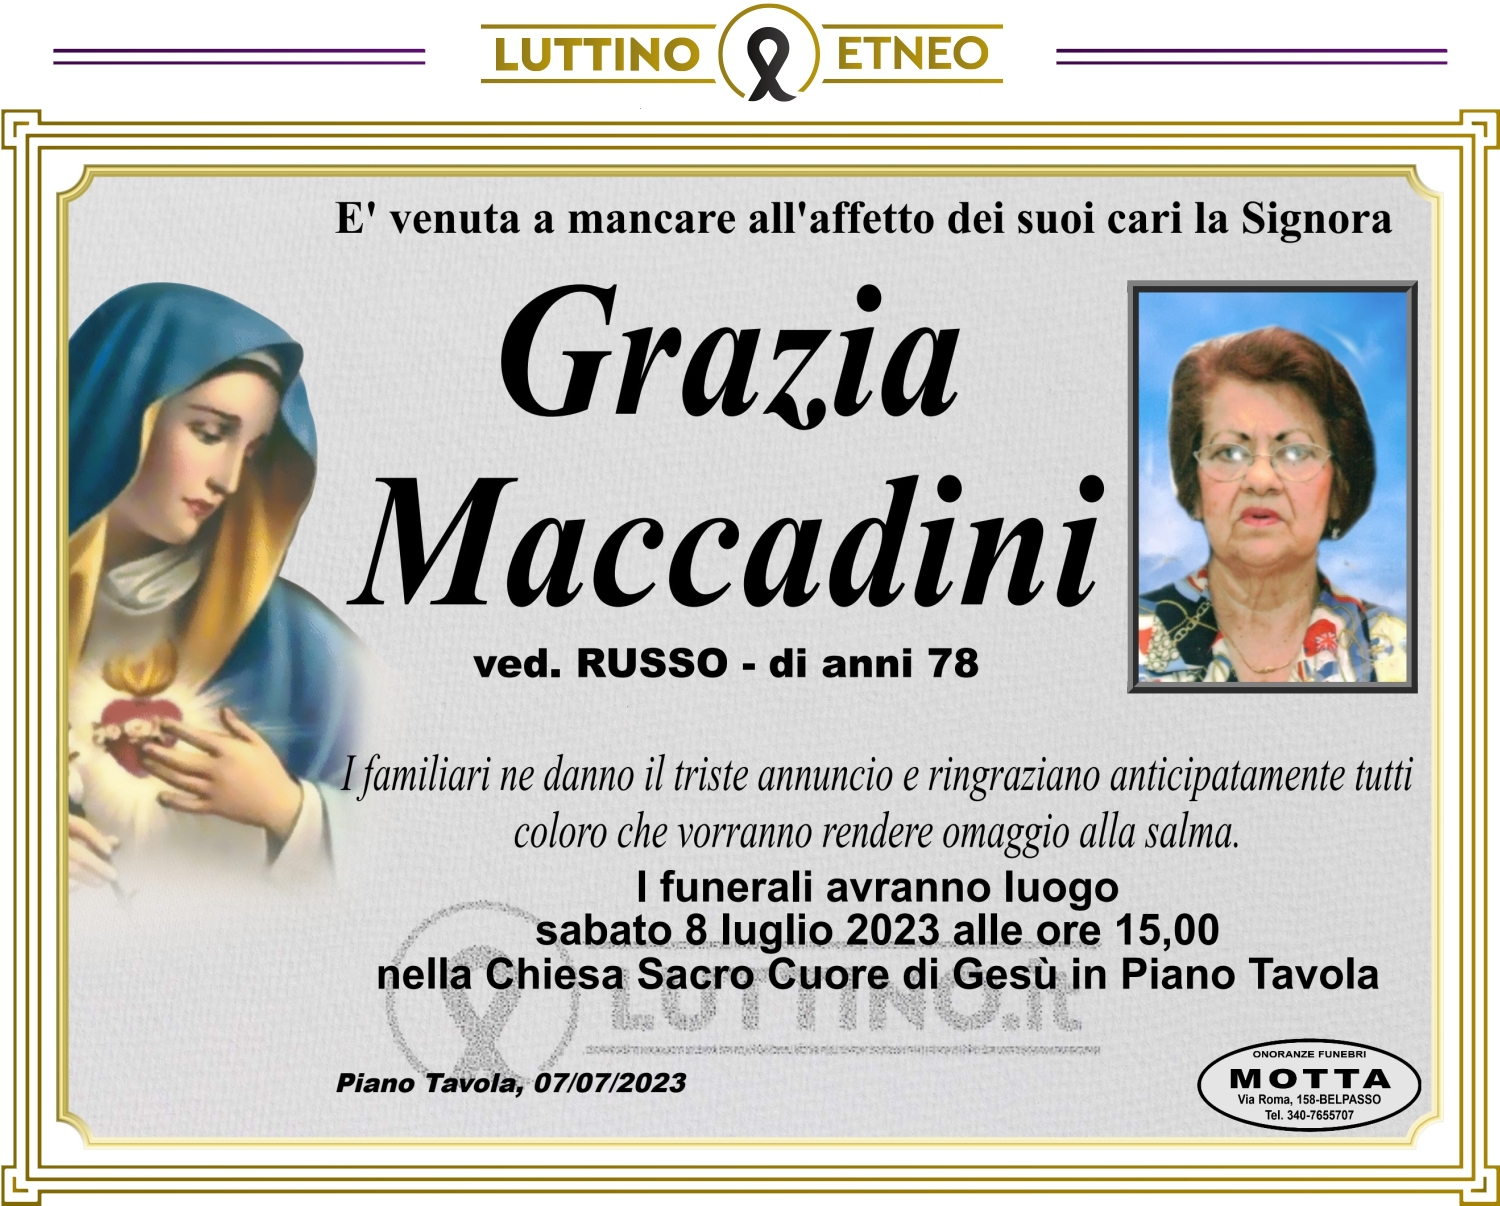 Grazia Maccadini